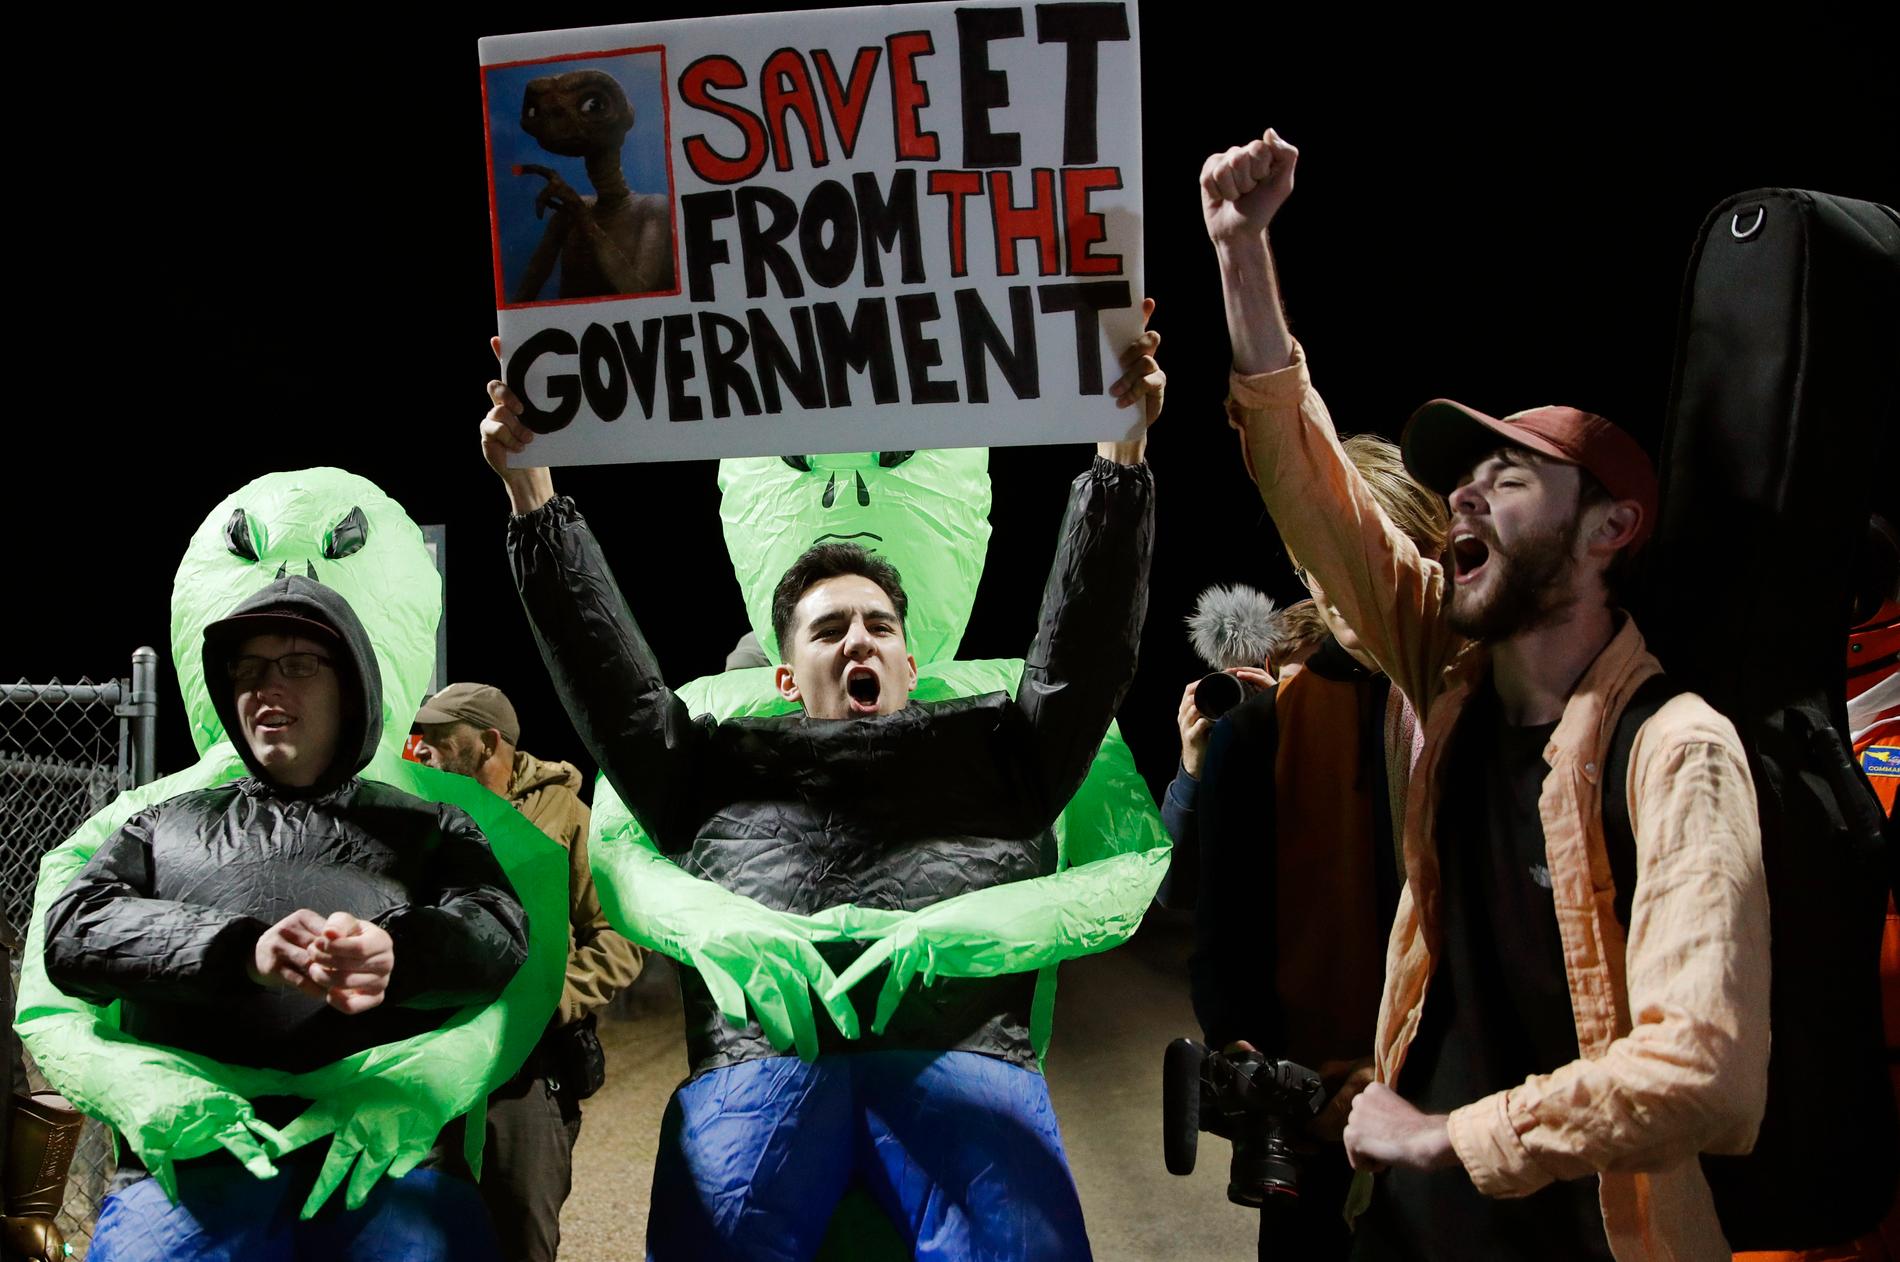 "Rädda ET från regeringen", har människor skrivit på plakat utanför Area 51.